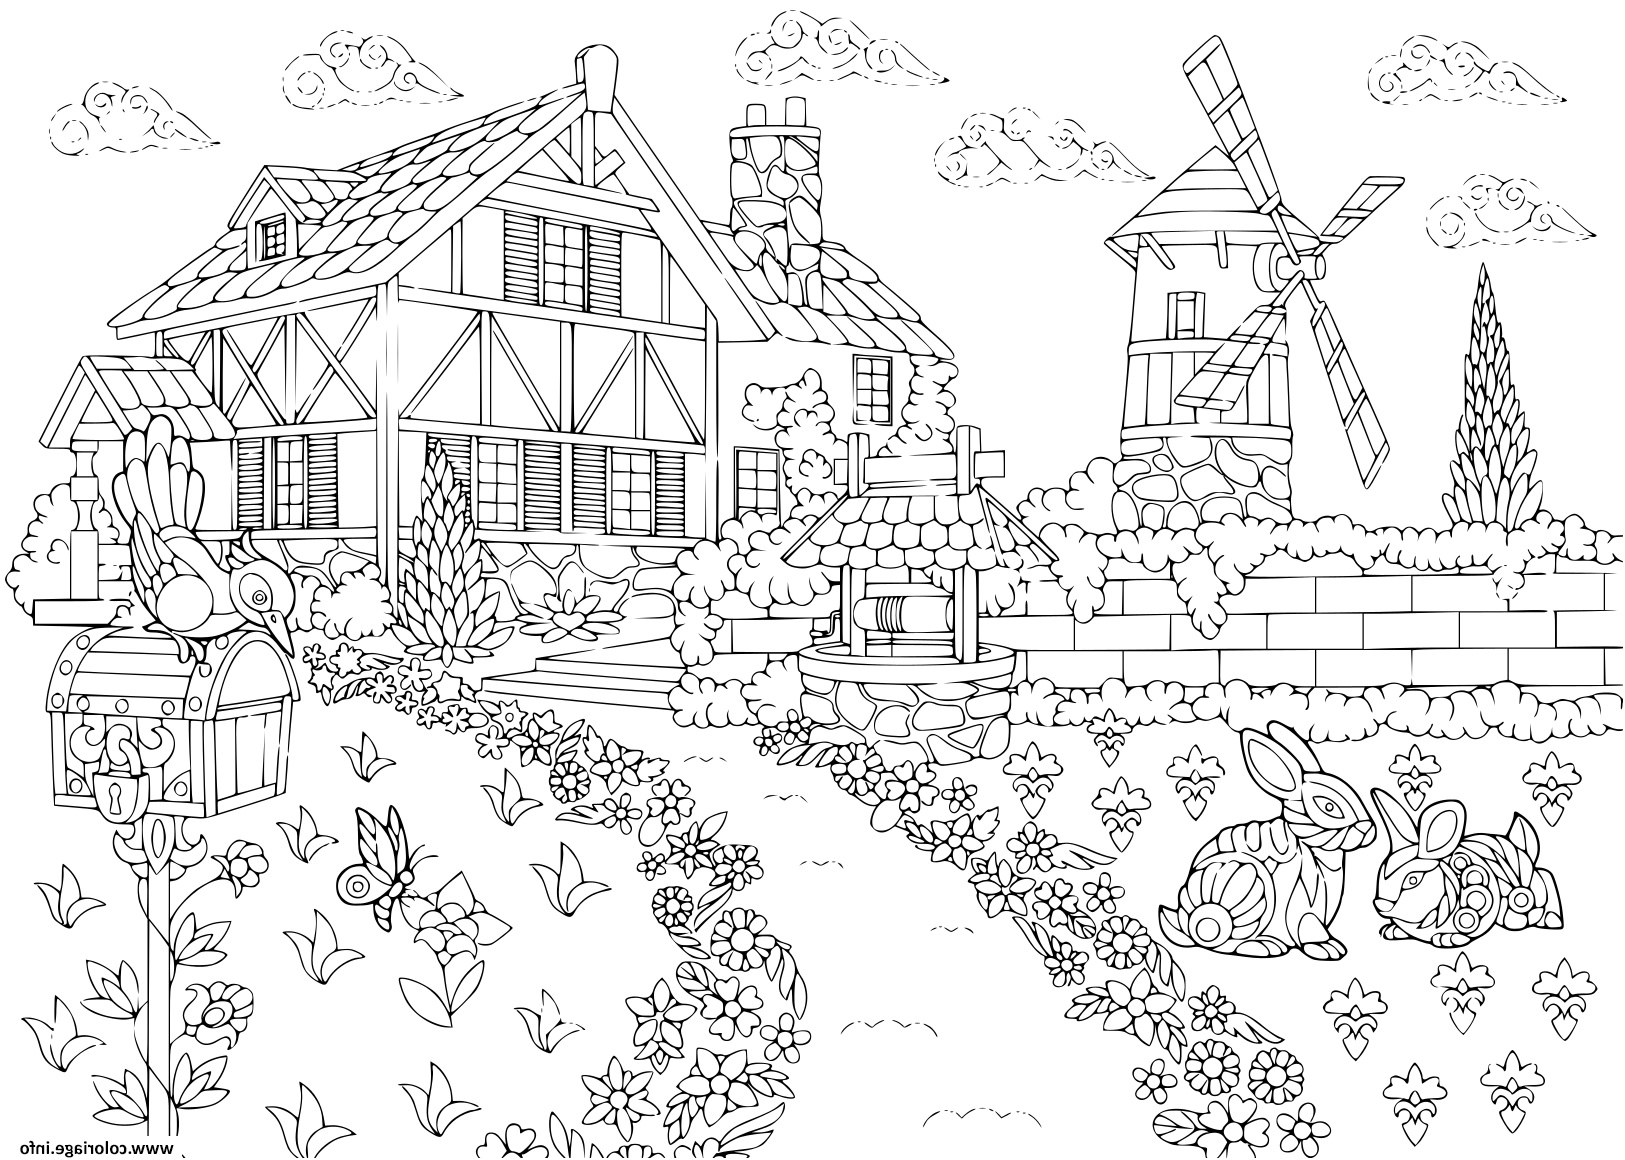 adulte paysage rural ferme moulin a vent puits d eau boite aux lettres lapins et oiseau pic cro coloriage